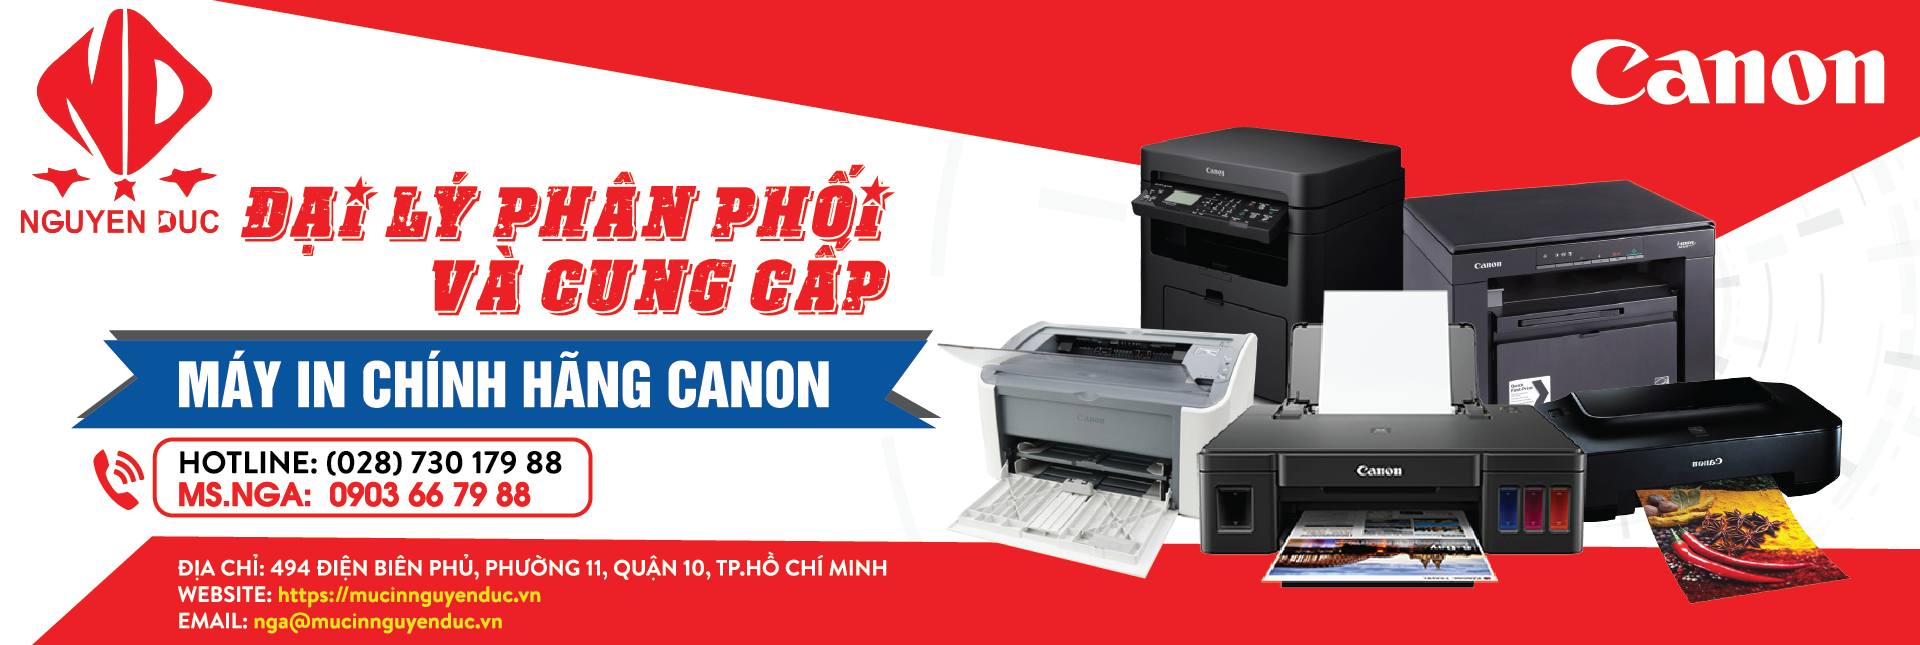 Đại lý phân phối máy in Canon ImageCLASS LBP 6230dw, giao hàng tại Bắc Giang